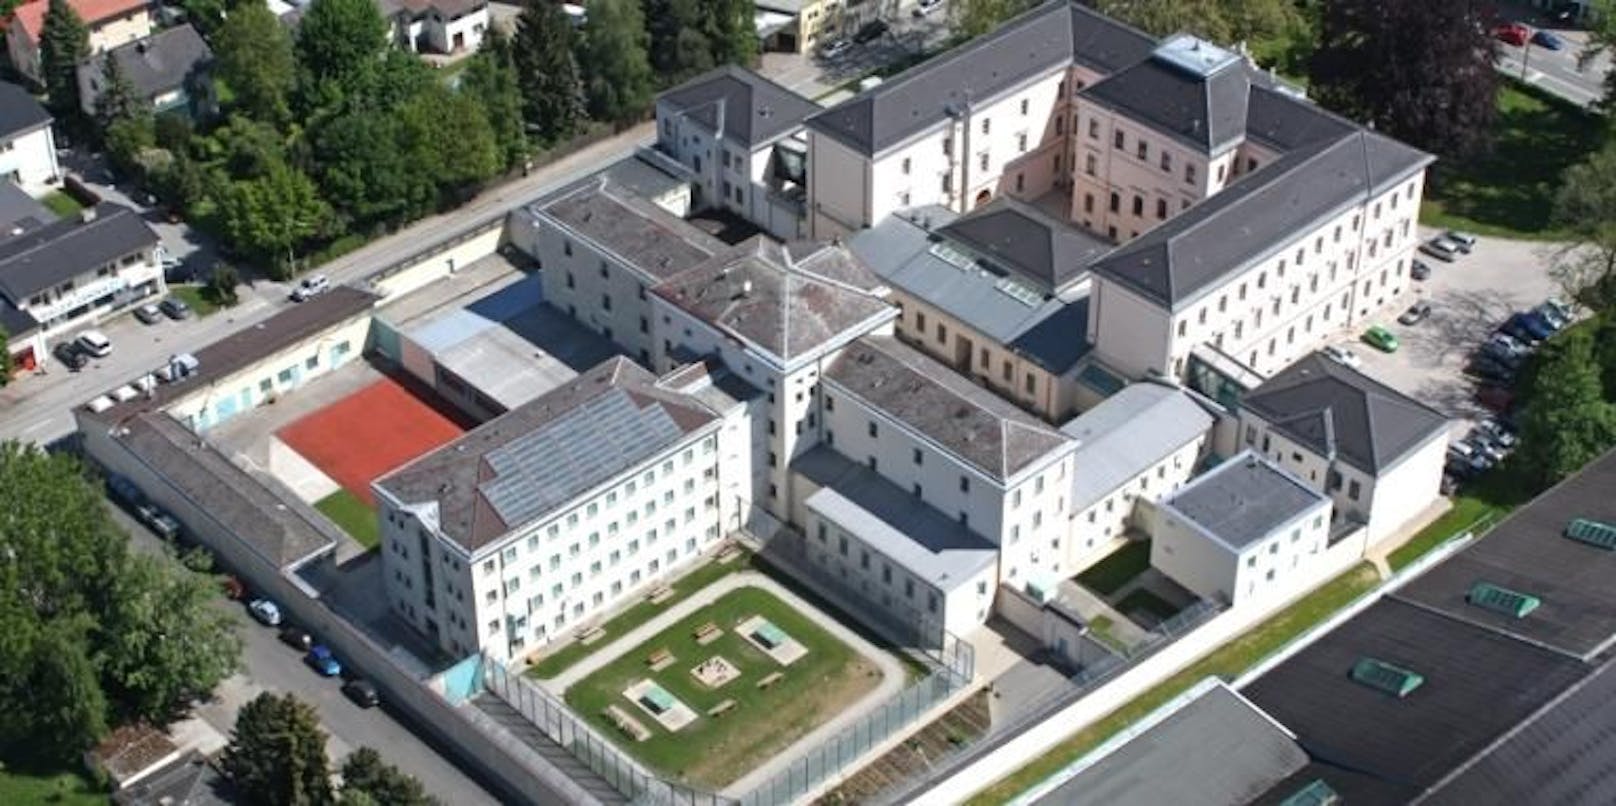 In Oberösterreich wurde ein gesuchter Straftäter erwischt, als er eine Wohnung anmelden wollte. Er wurde in die Justizanstalt Ried gebracht.